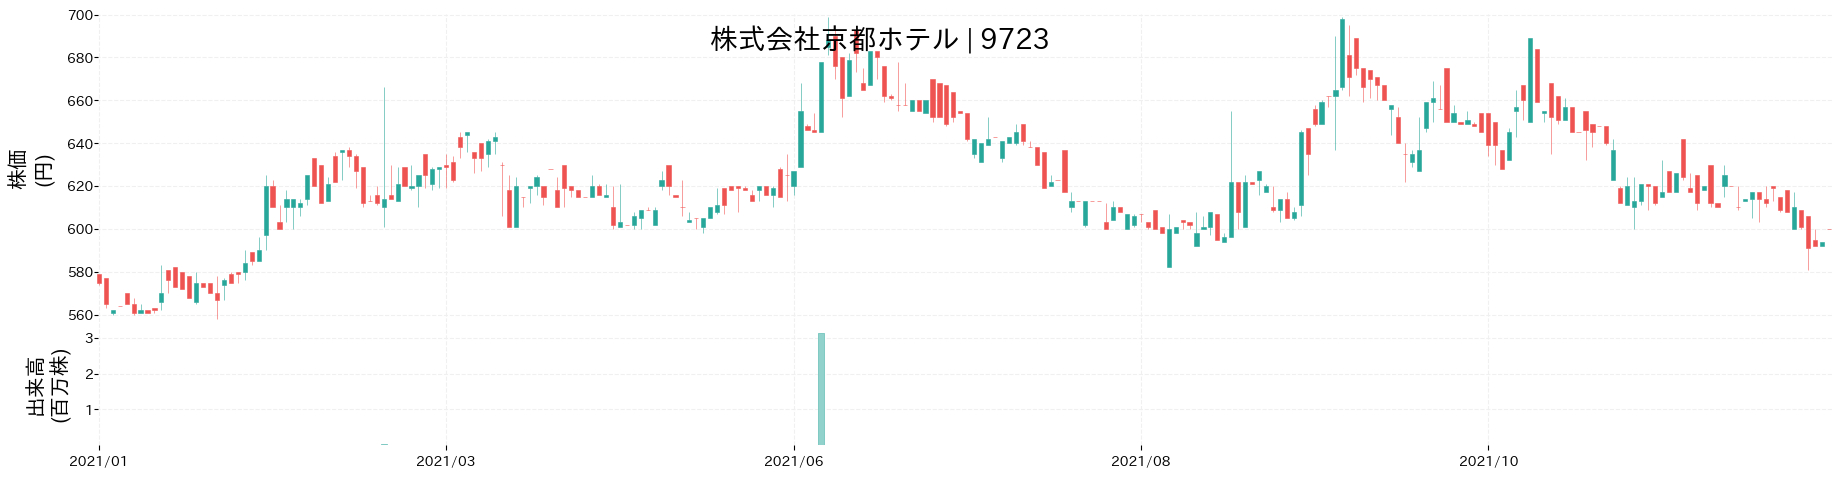 京都ホテルの株価推移(2021)